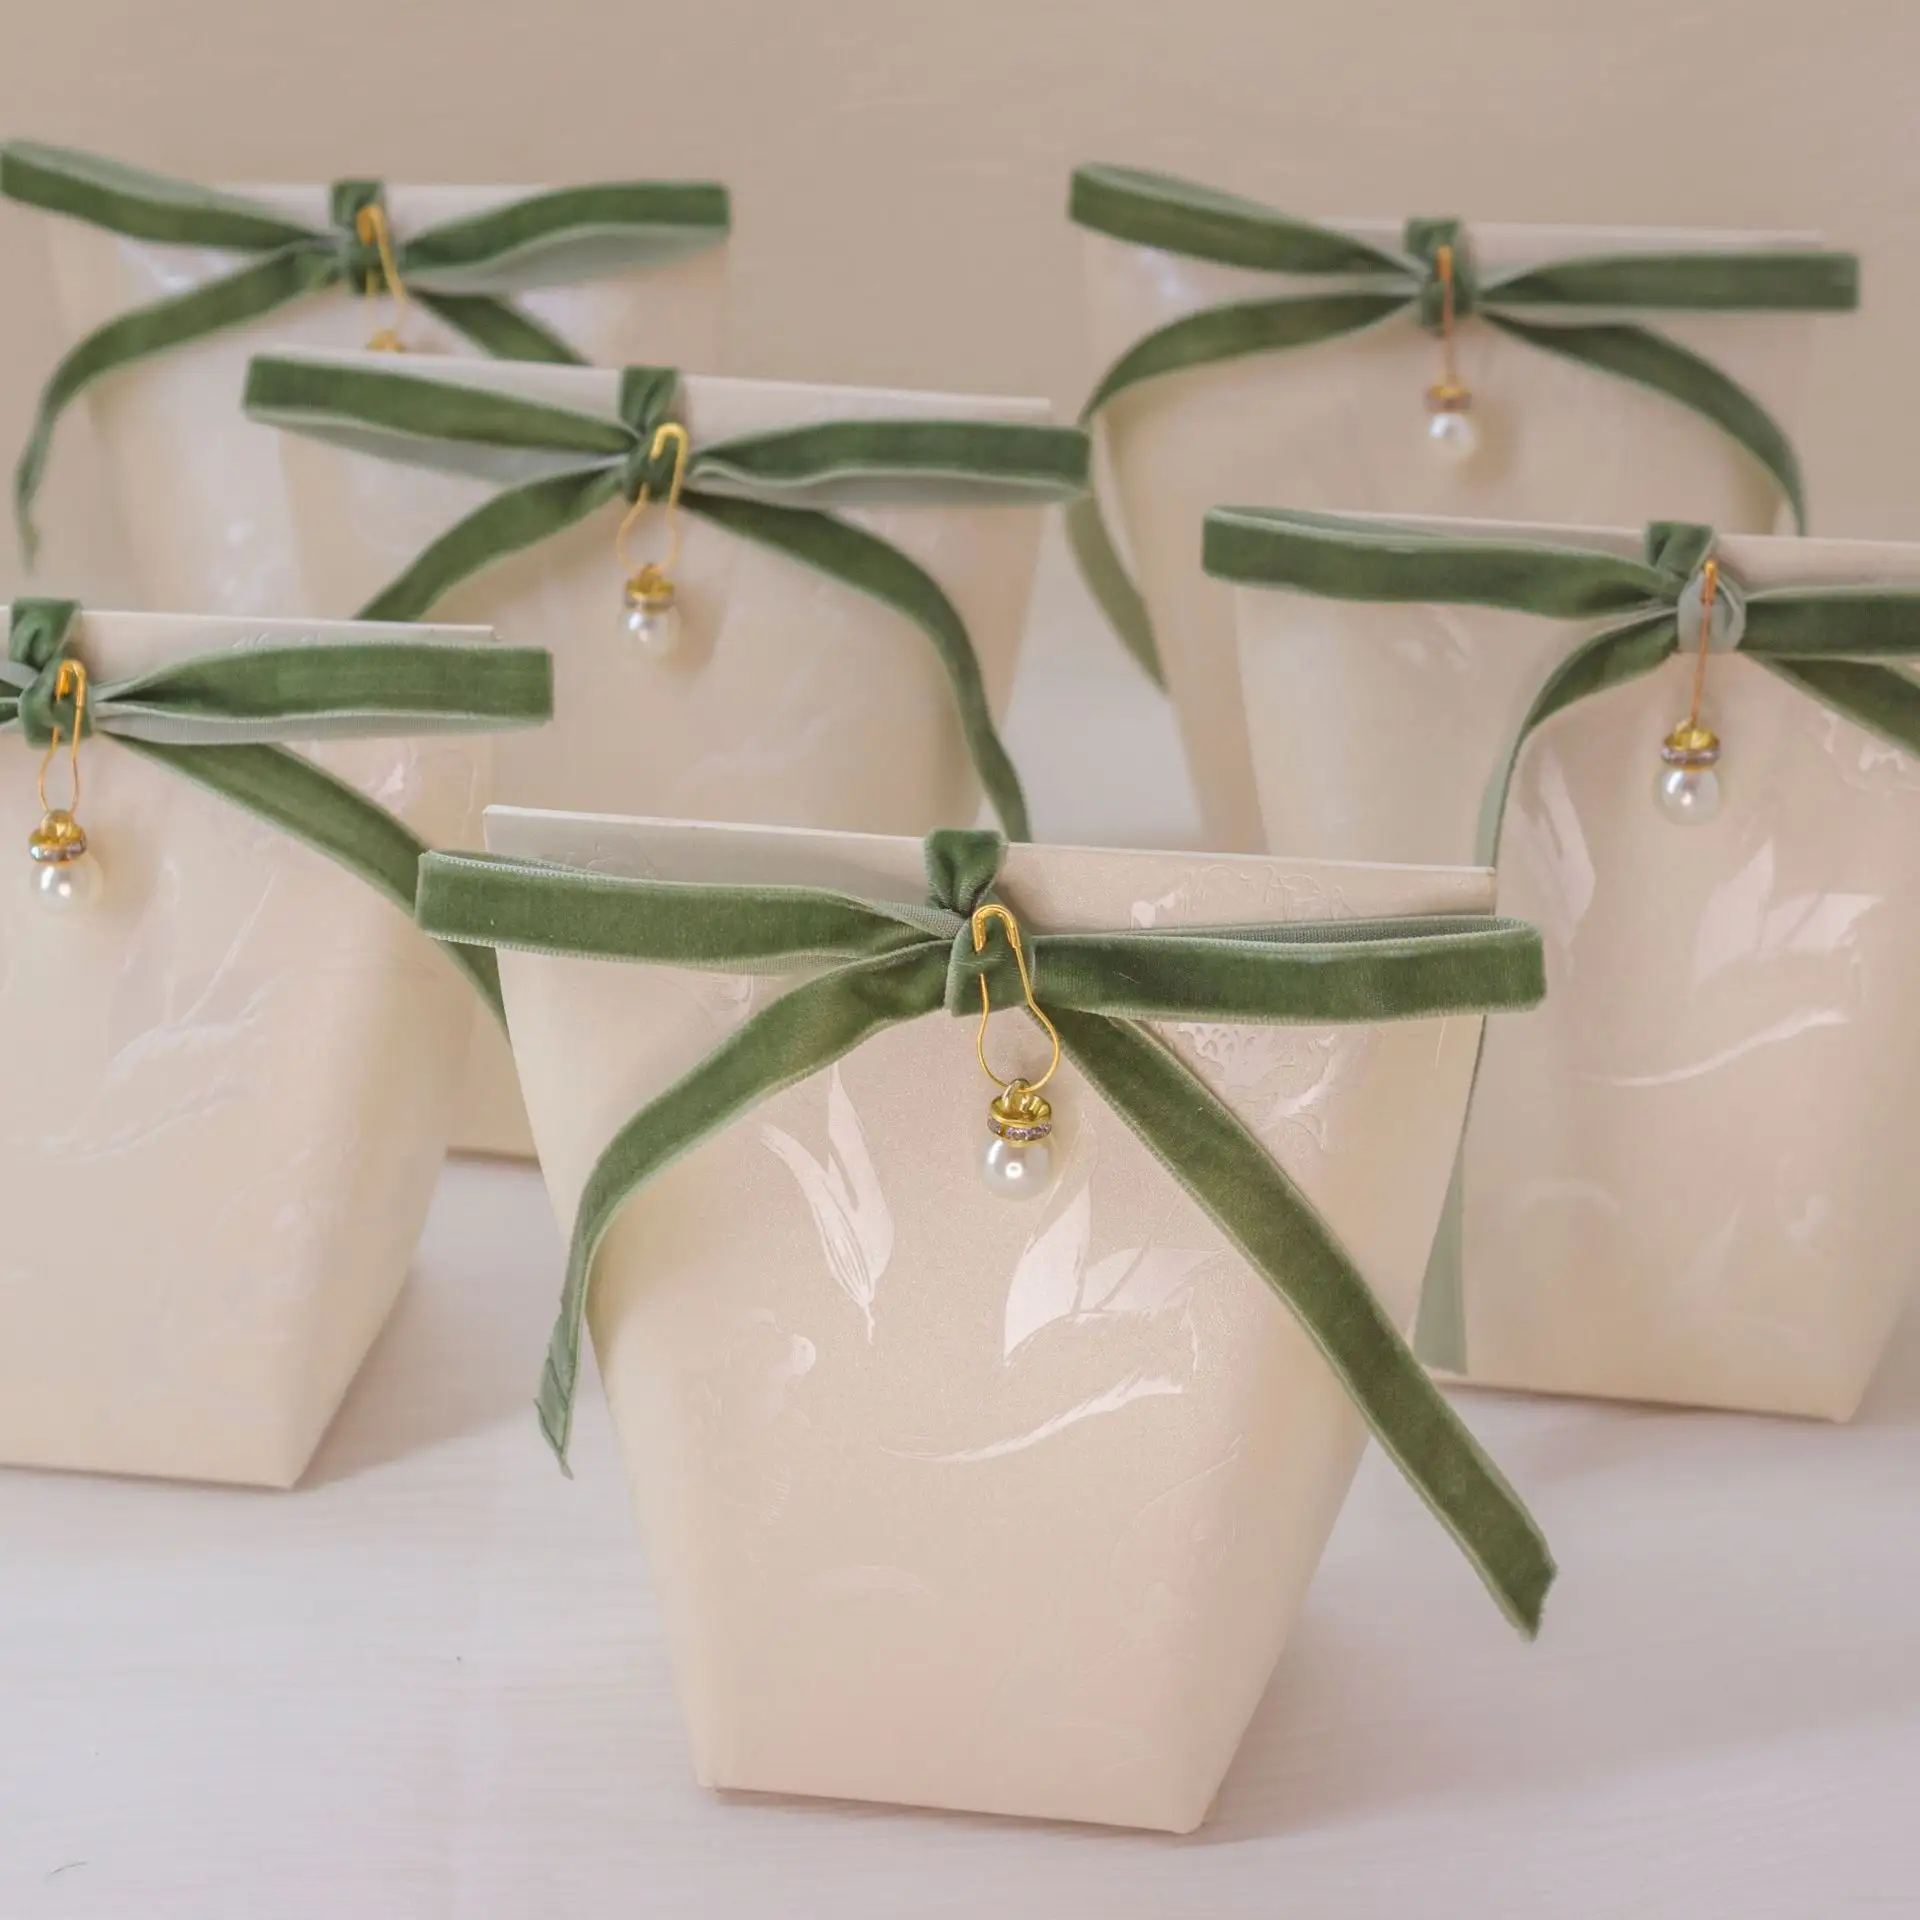 Produttori cinesi pieghevoli all'ingrosso decorazione nastro verde bomboniere colore crema scatole di imballaggio caramelle vuote per dolce